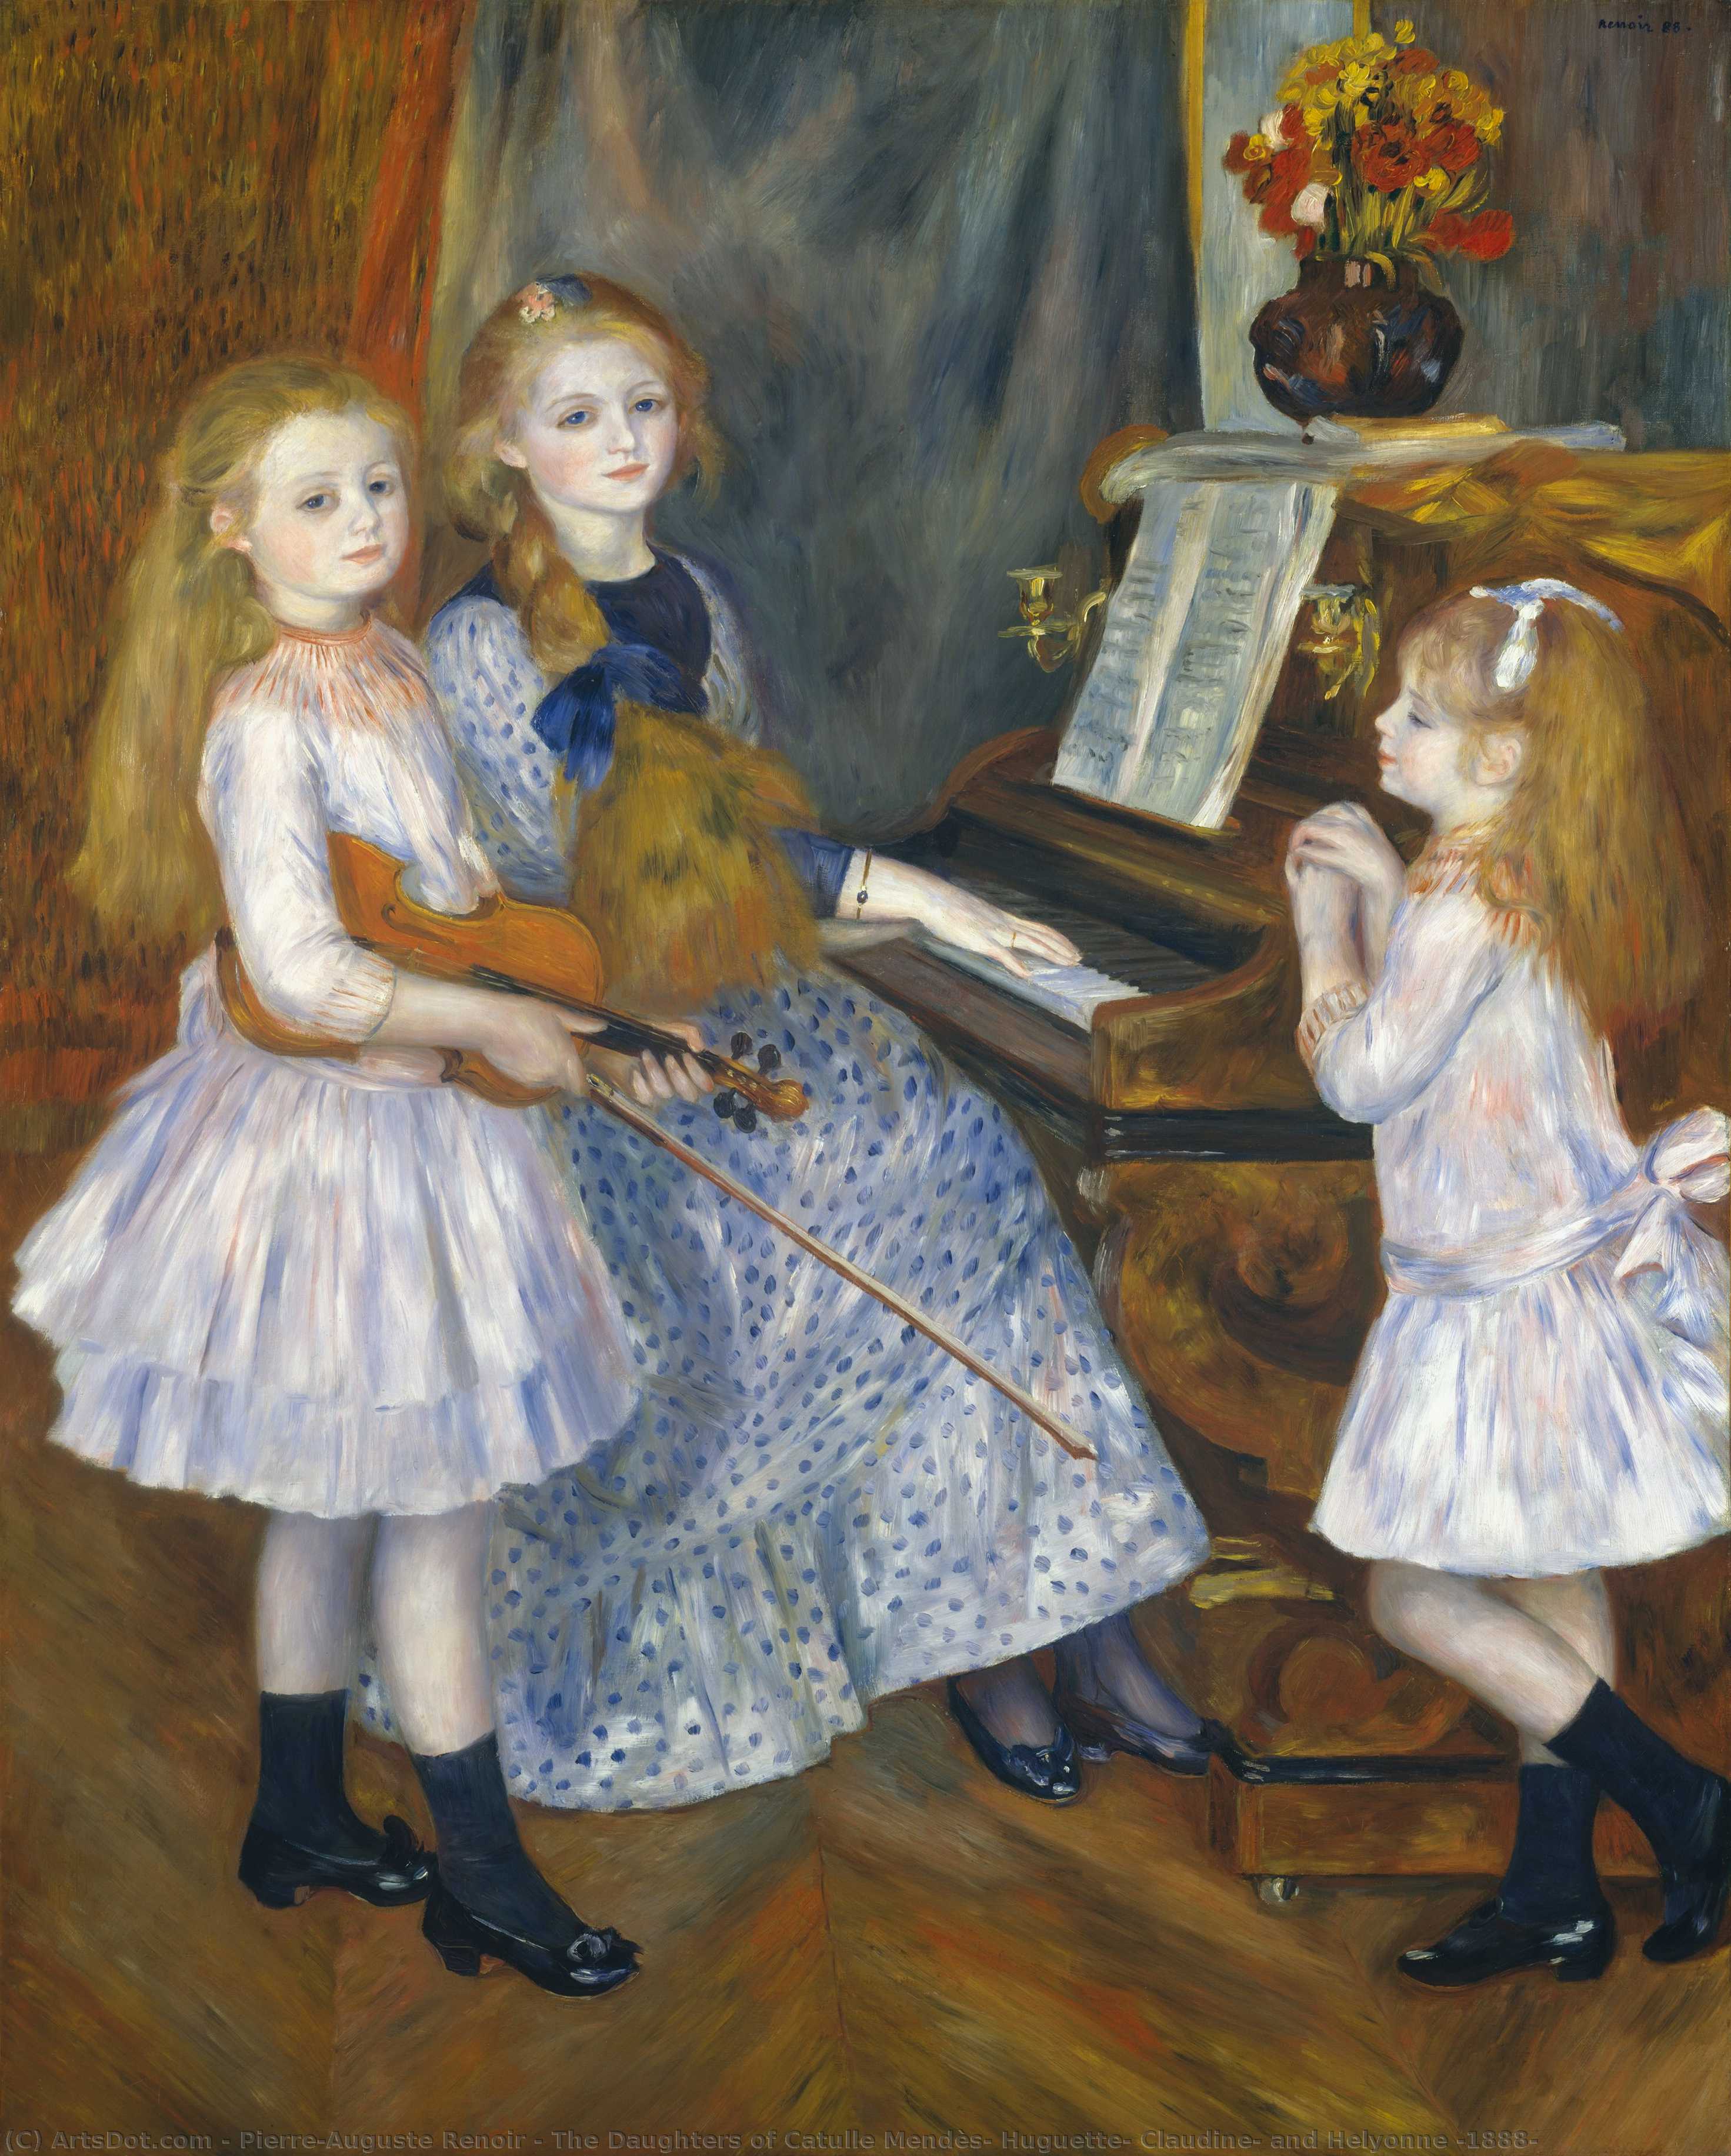 Wikioo.org - Bách khoa toàn thư về mỹ thuật - Vẽ tranh, Tác phẩm nghệ thuật Pierre-Auguste Renoir - The Daughters of Catulle Mendès, Huguette, Claudine, and Helyonne (1888)